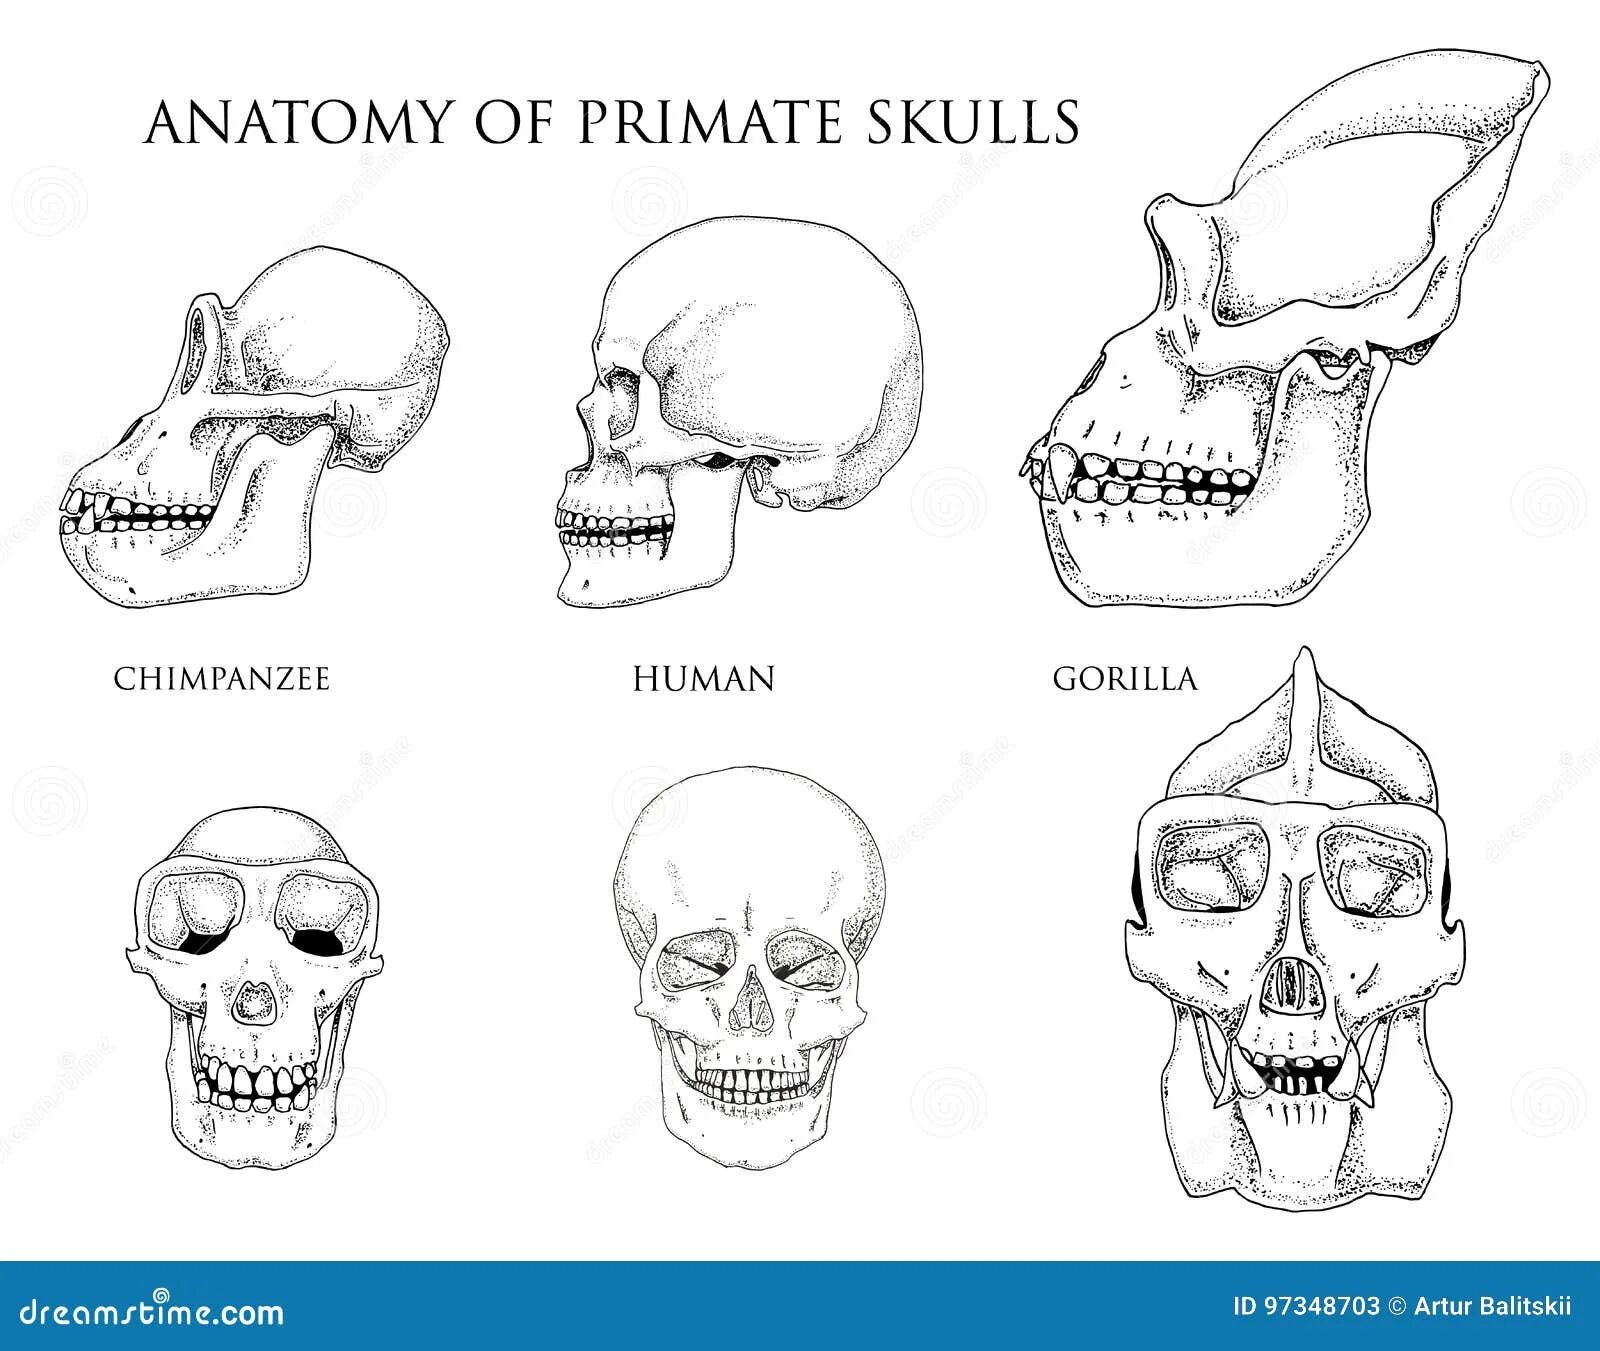 Мозг гориллы и человека. Череп строение черепа человекообразной обезьяны. Строение черепа шимпанзе. Череп шимпанзе и человека.